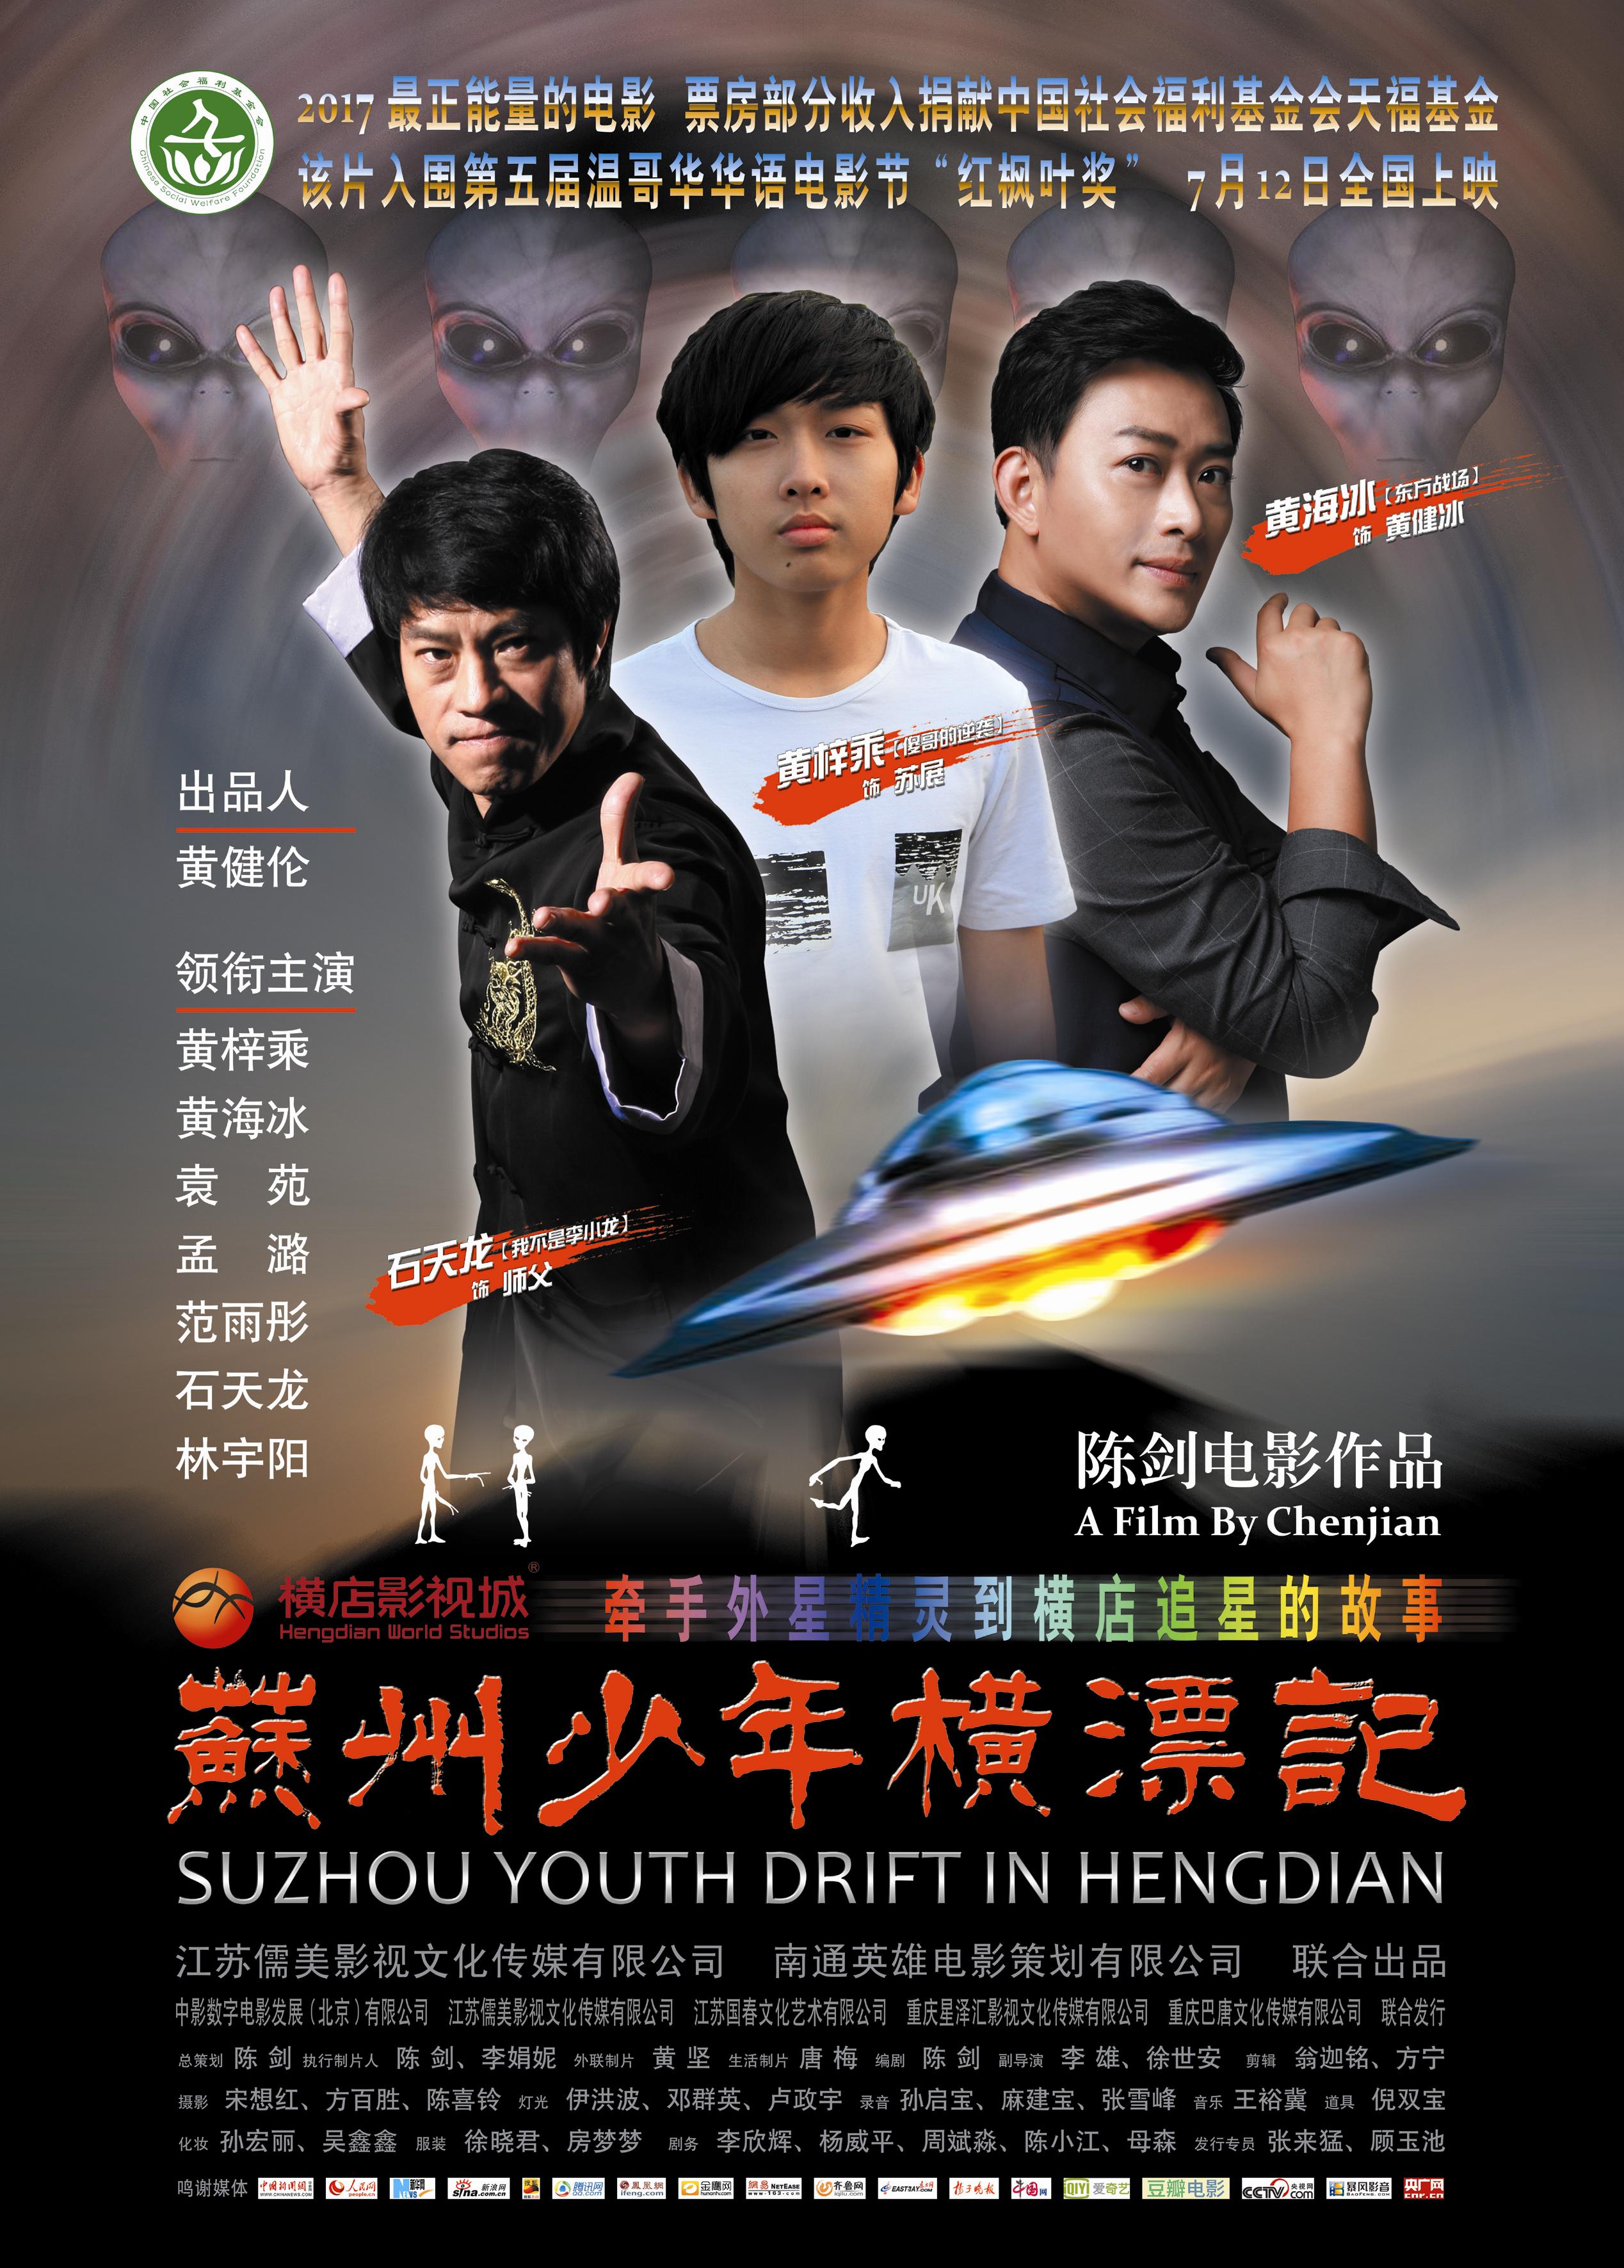 苏州少年横漂记 - Suzhou Youth Drift in Hengdian